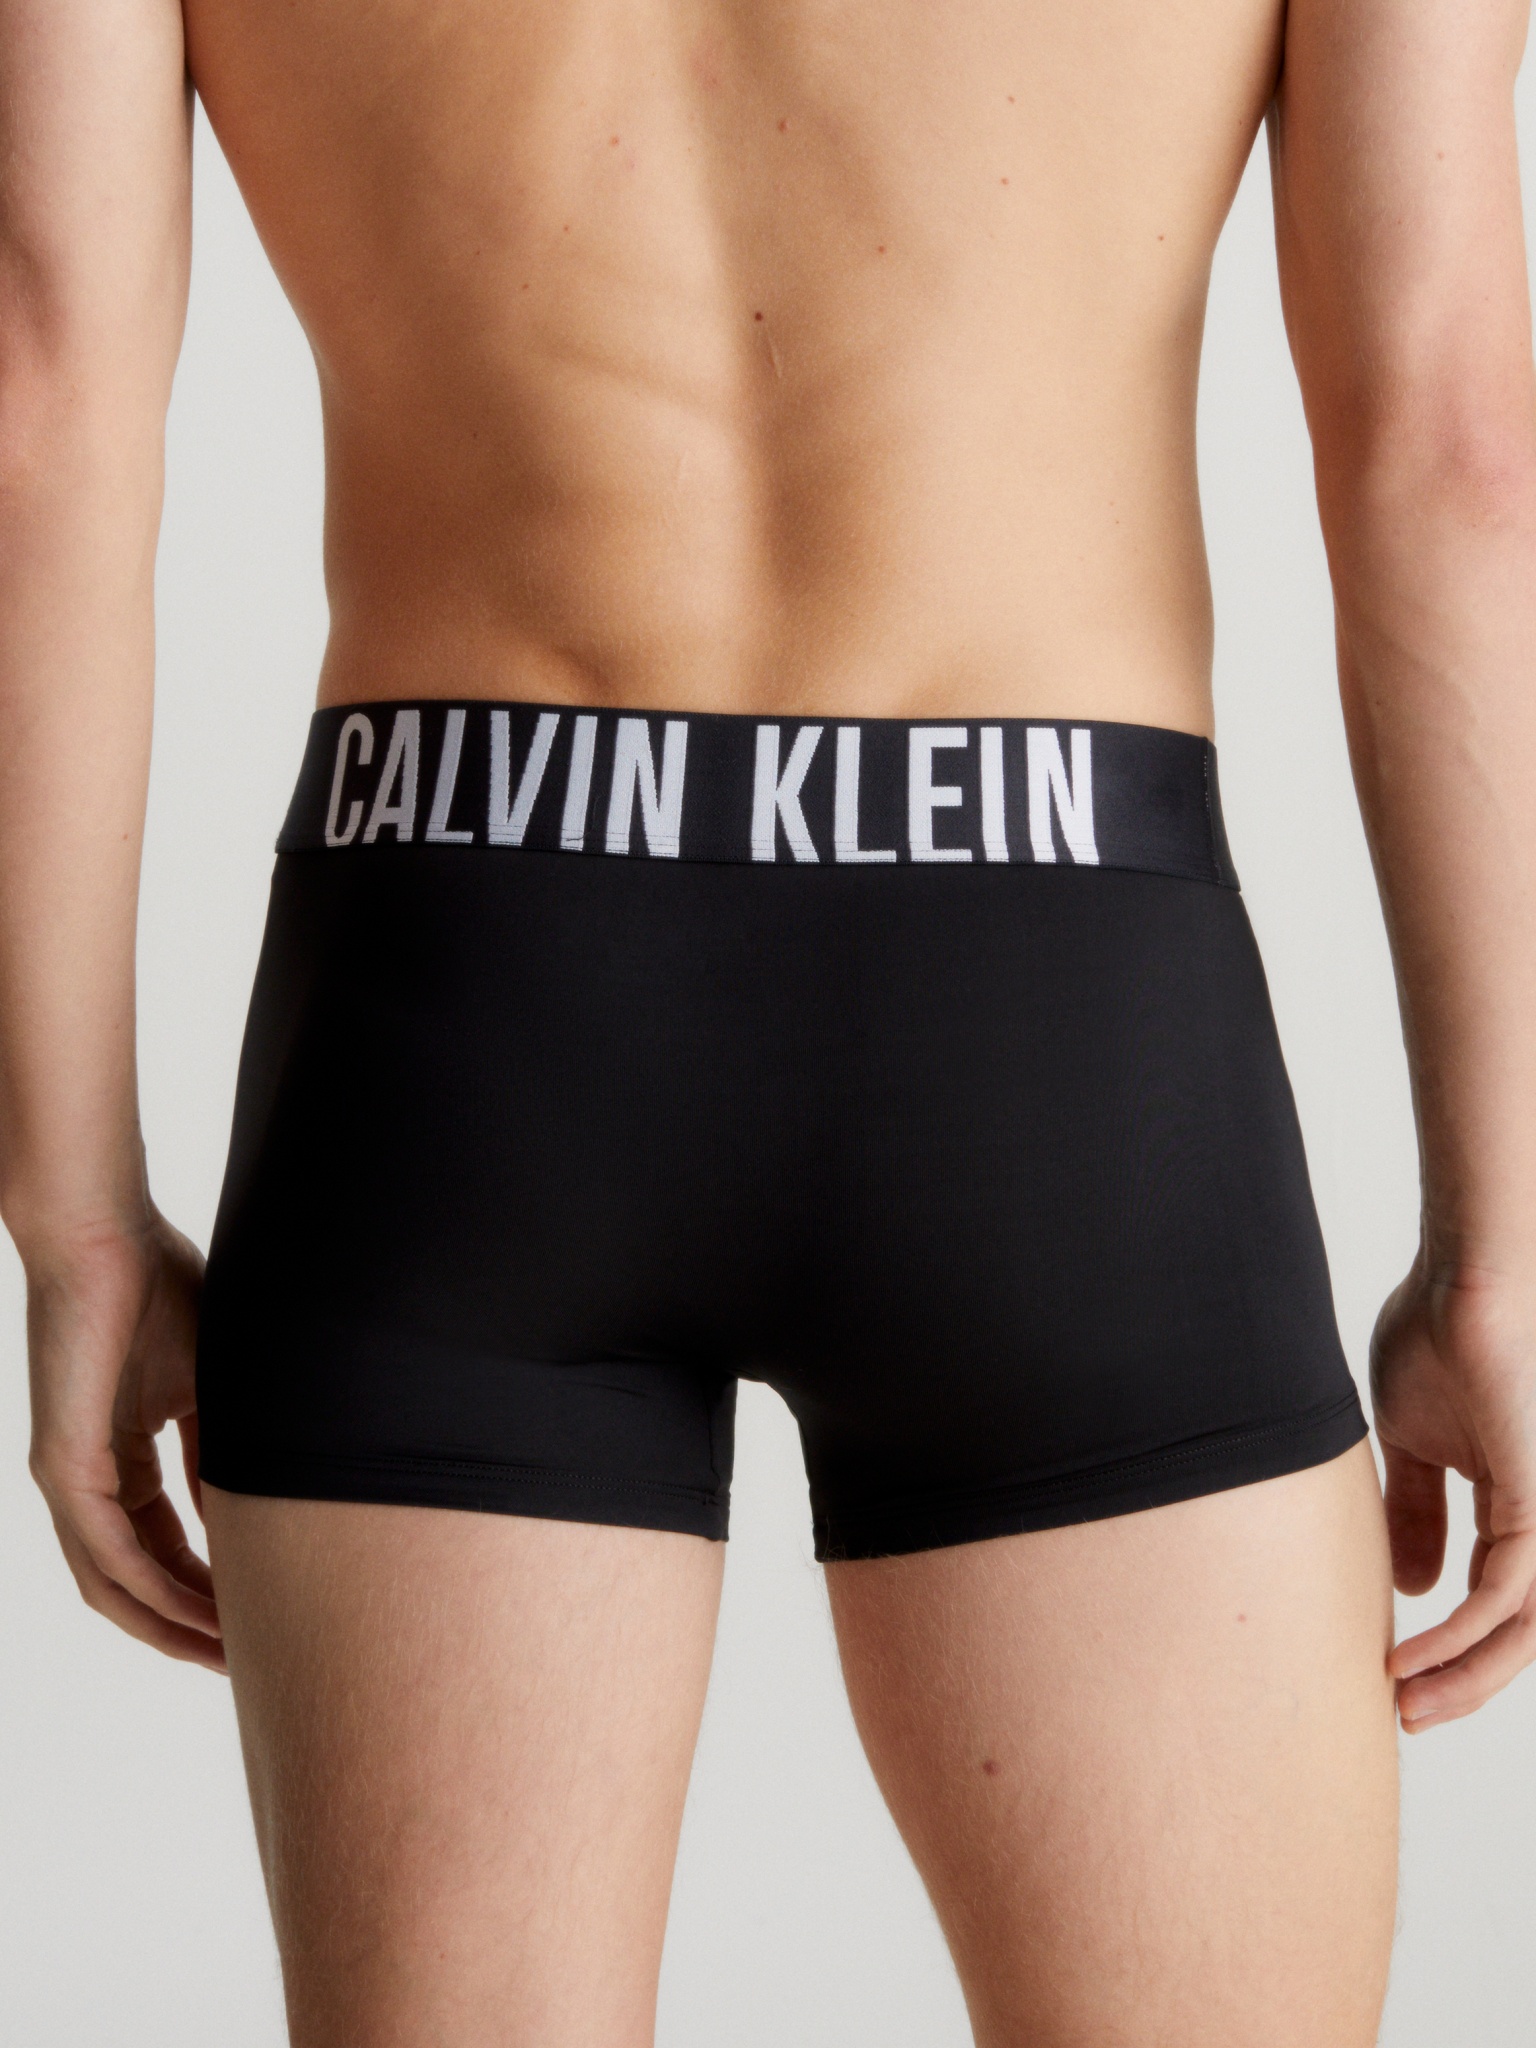 CALVIN KLEIN 3er-Pack Boxershorts 10734327